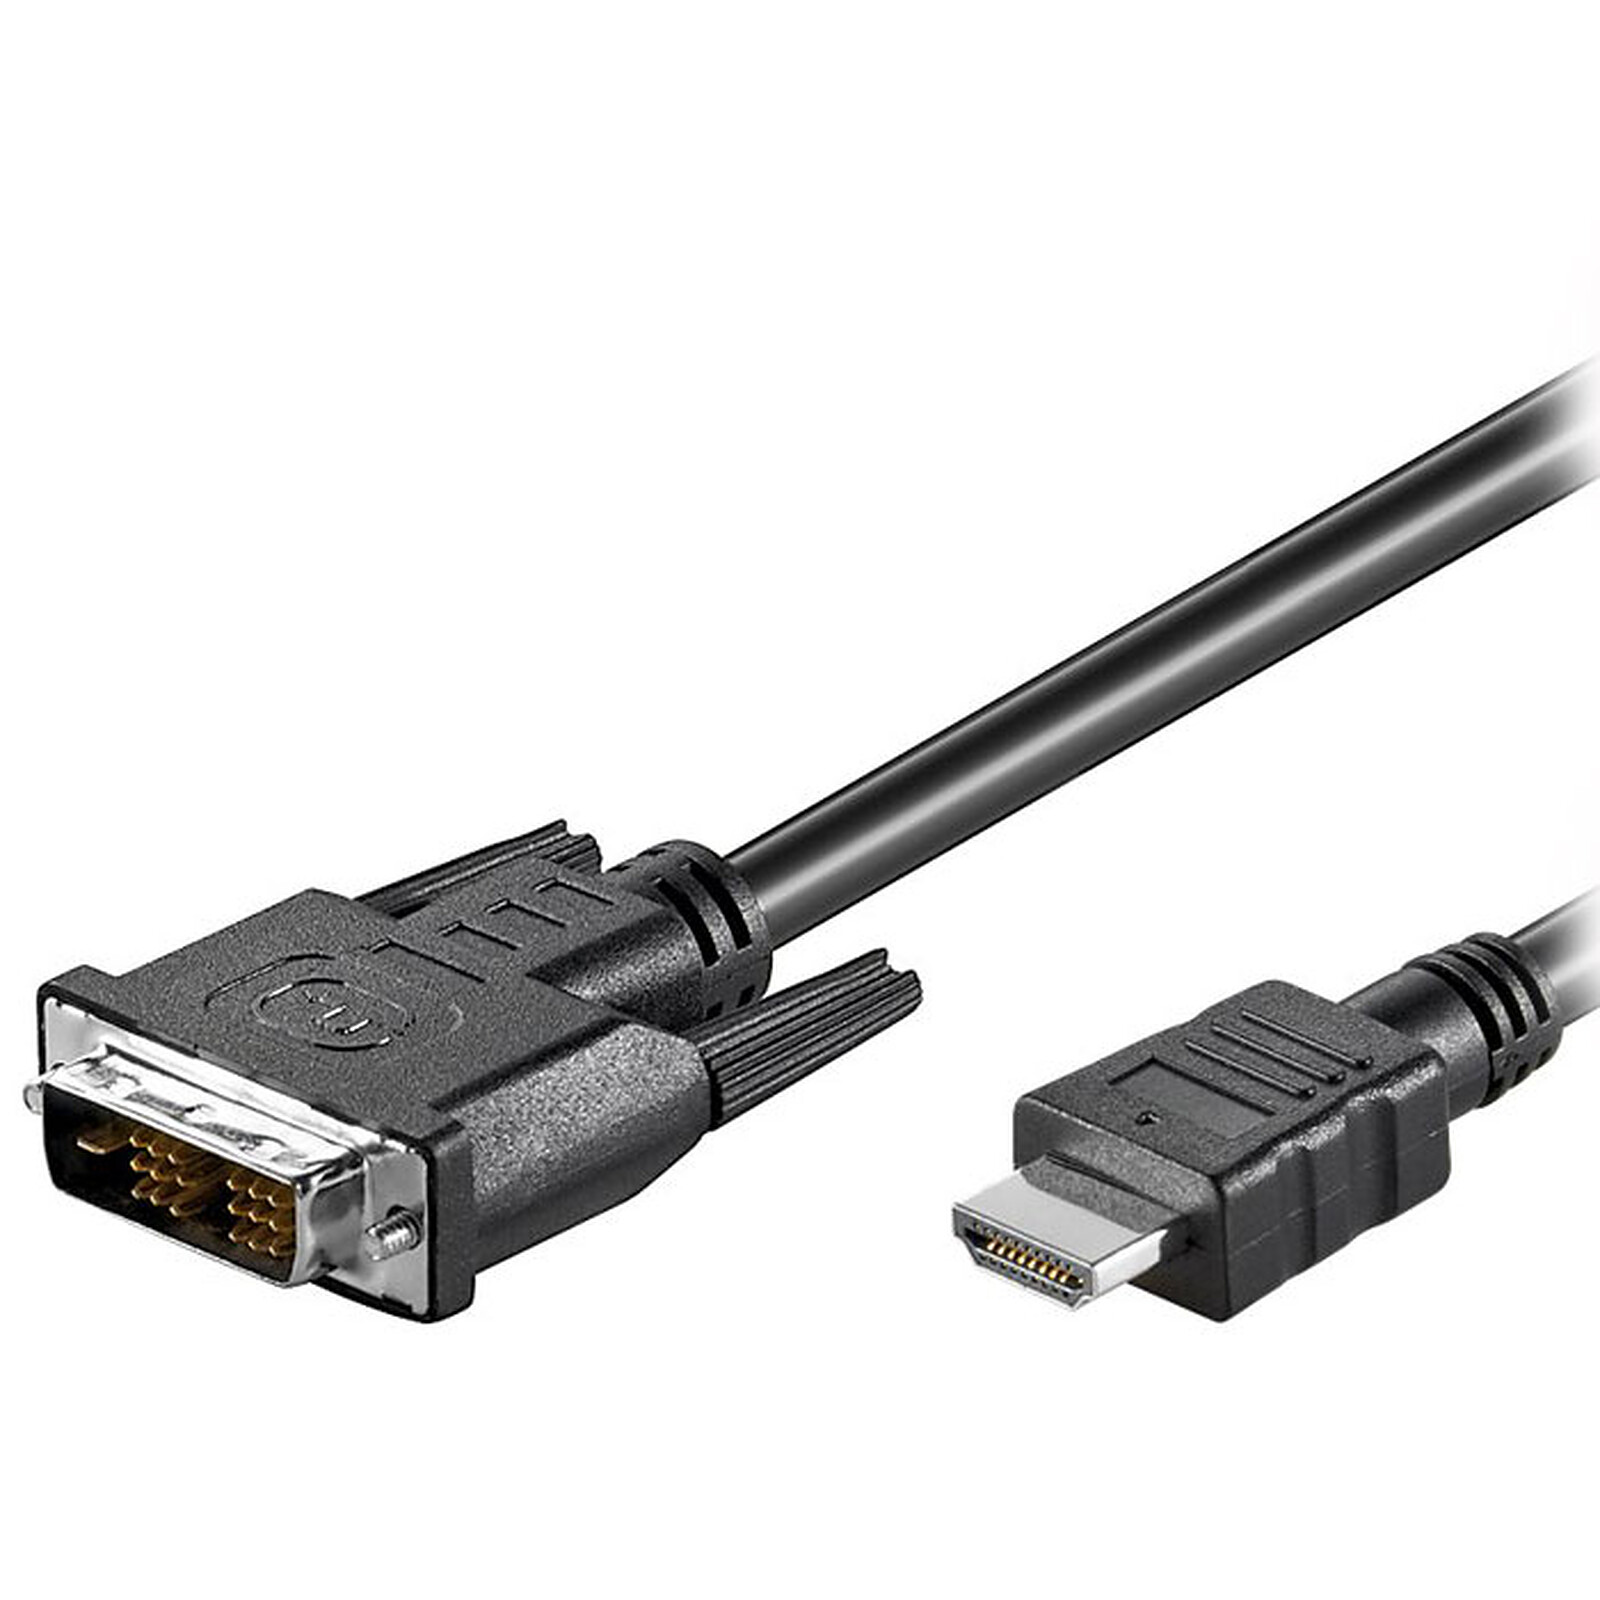 Cable DVI-D Single Link macho / HDMI macho (2 metros) - DVI Genérica en